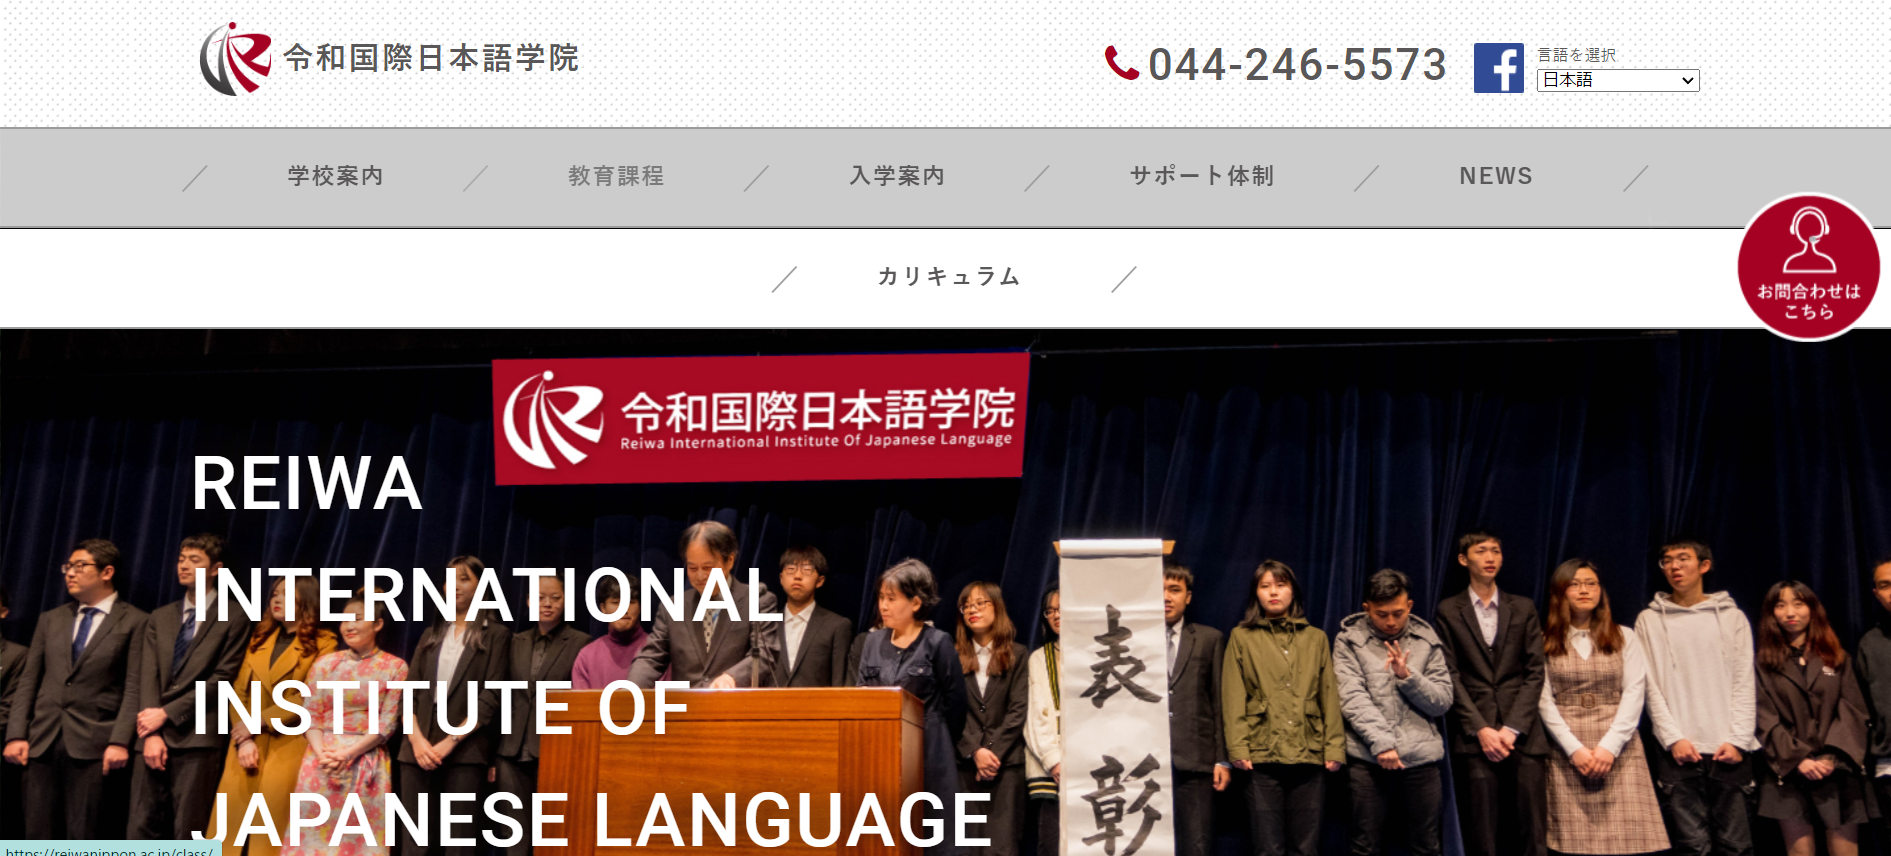 令和国際日本語学院の画像